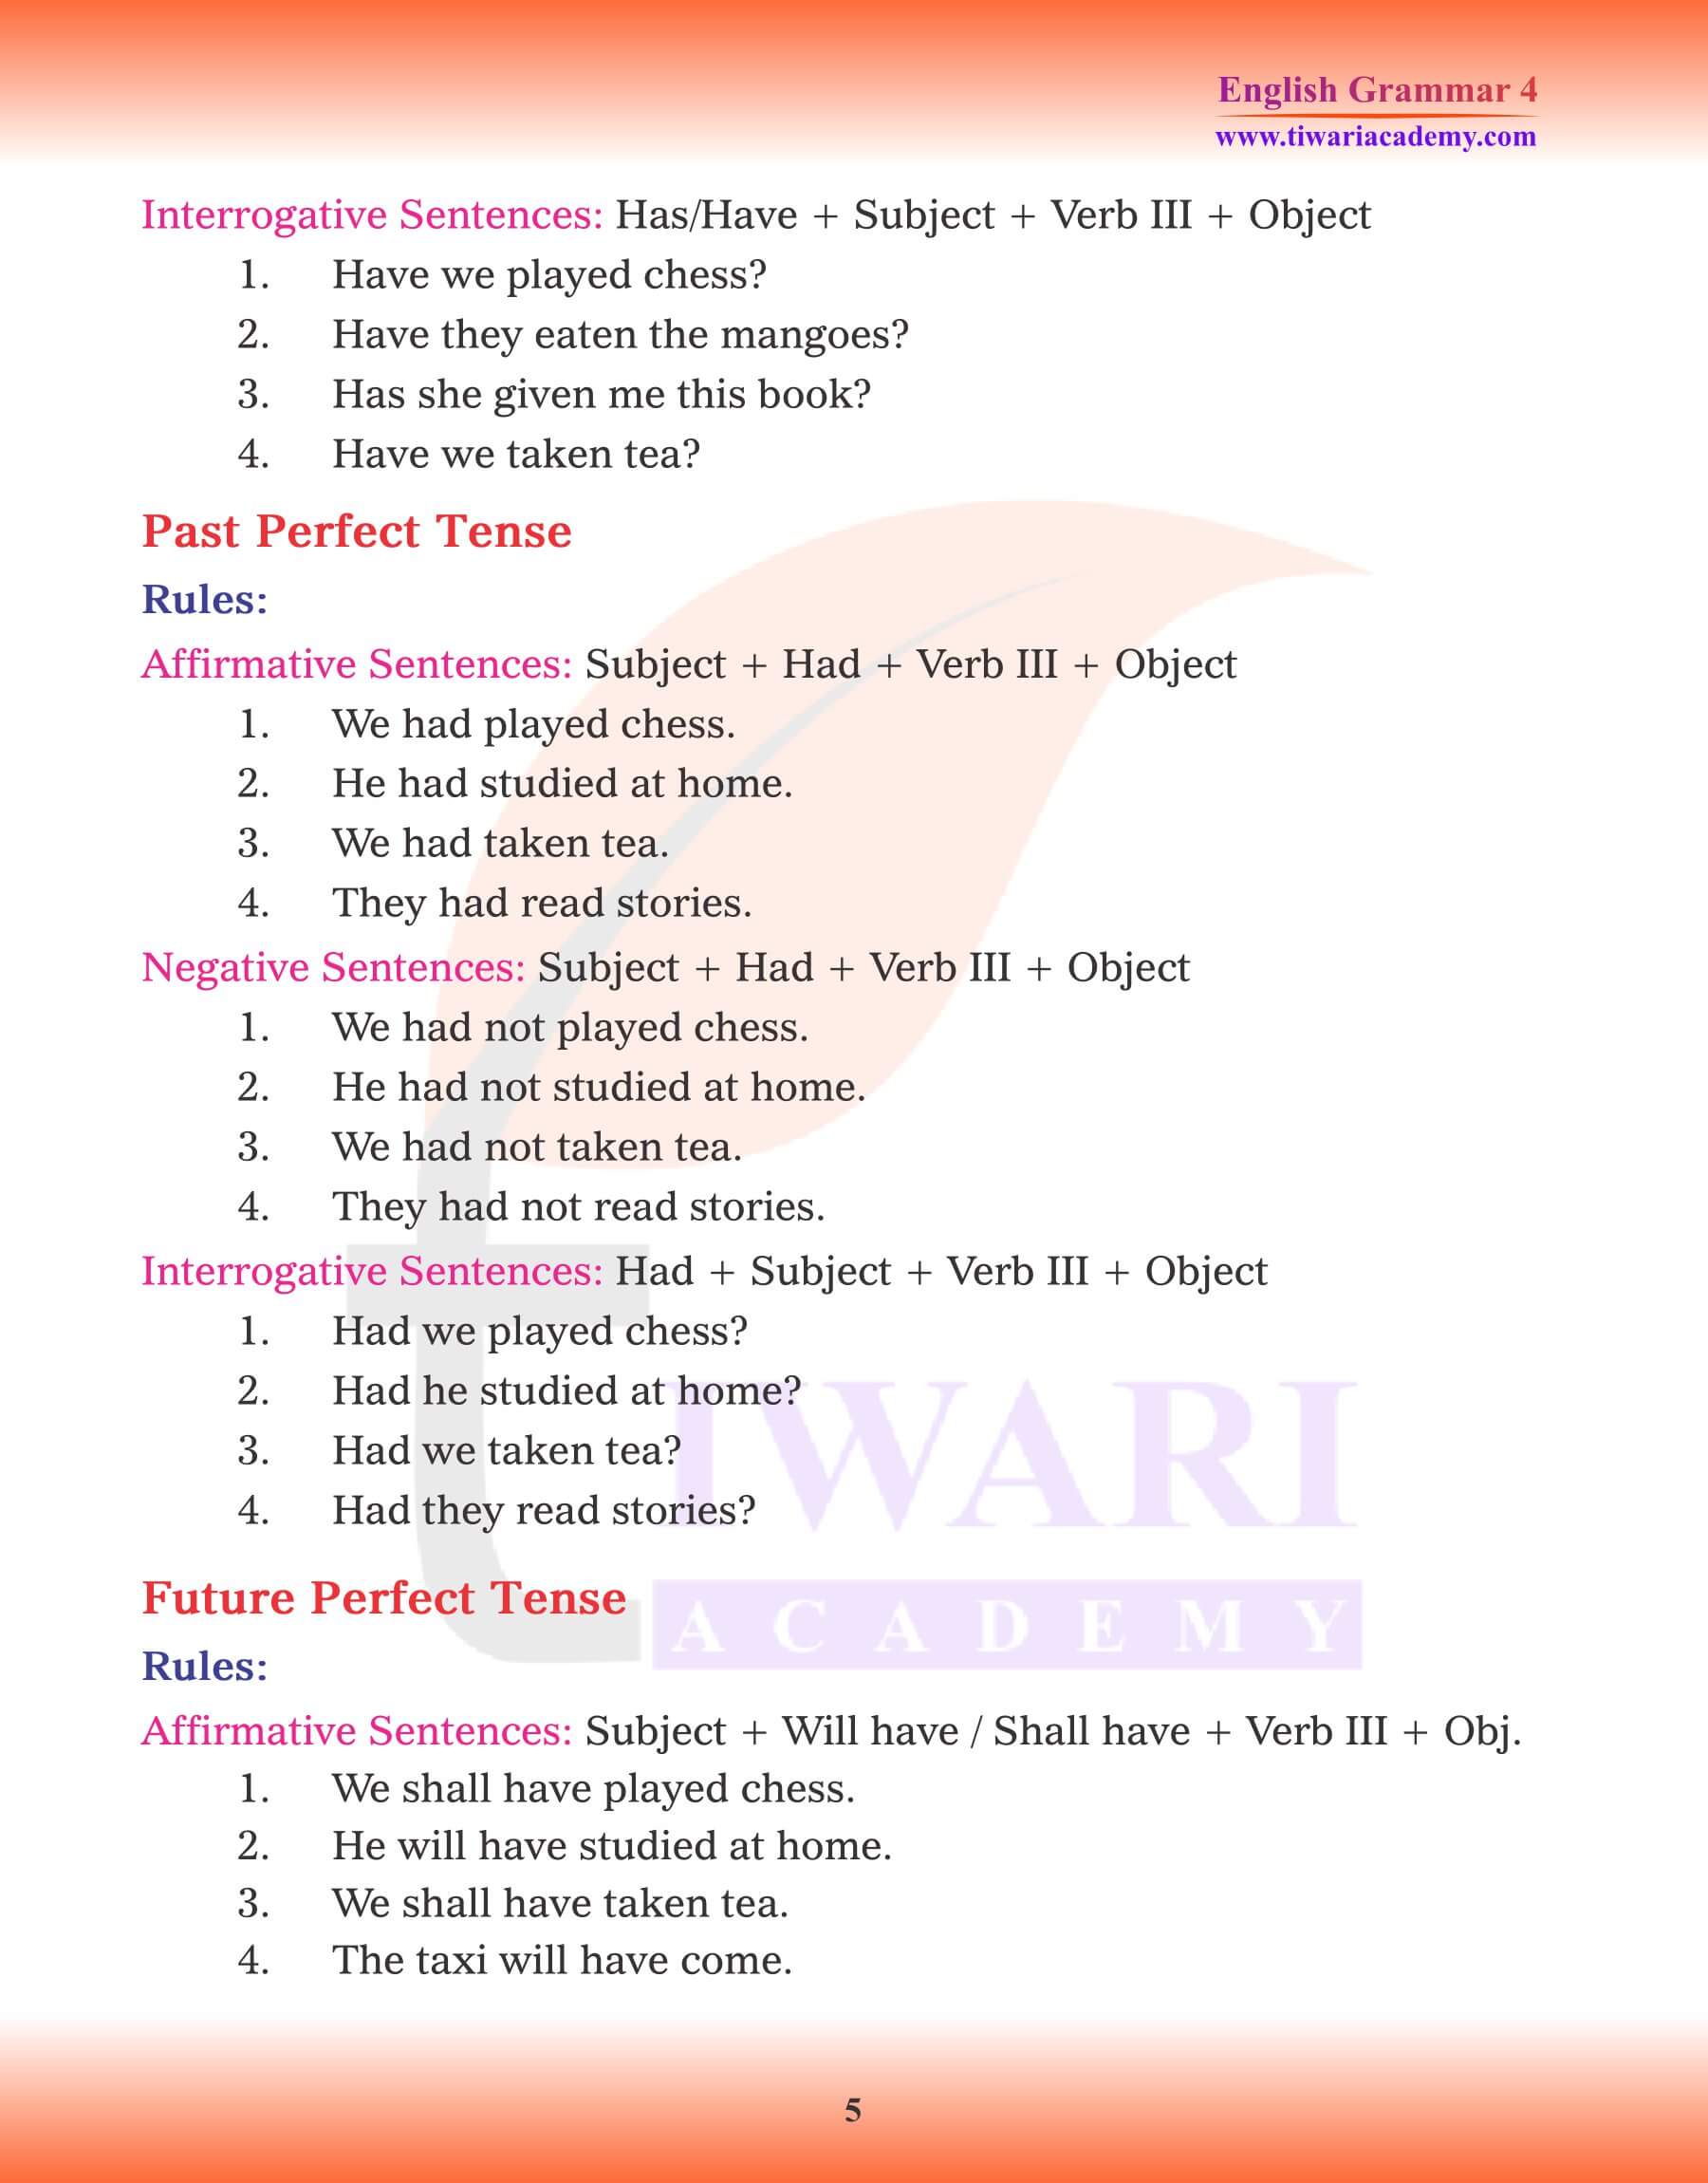 Class 4 English Grammar Chapter 8 Kinds of Tense